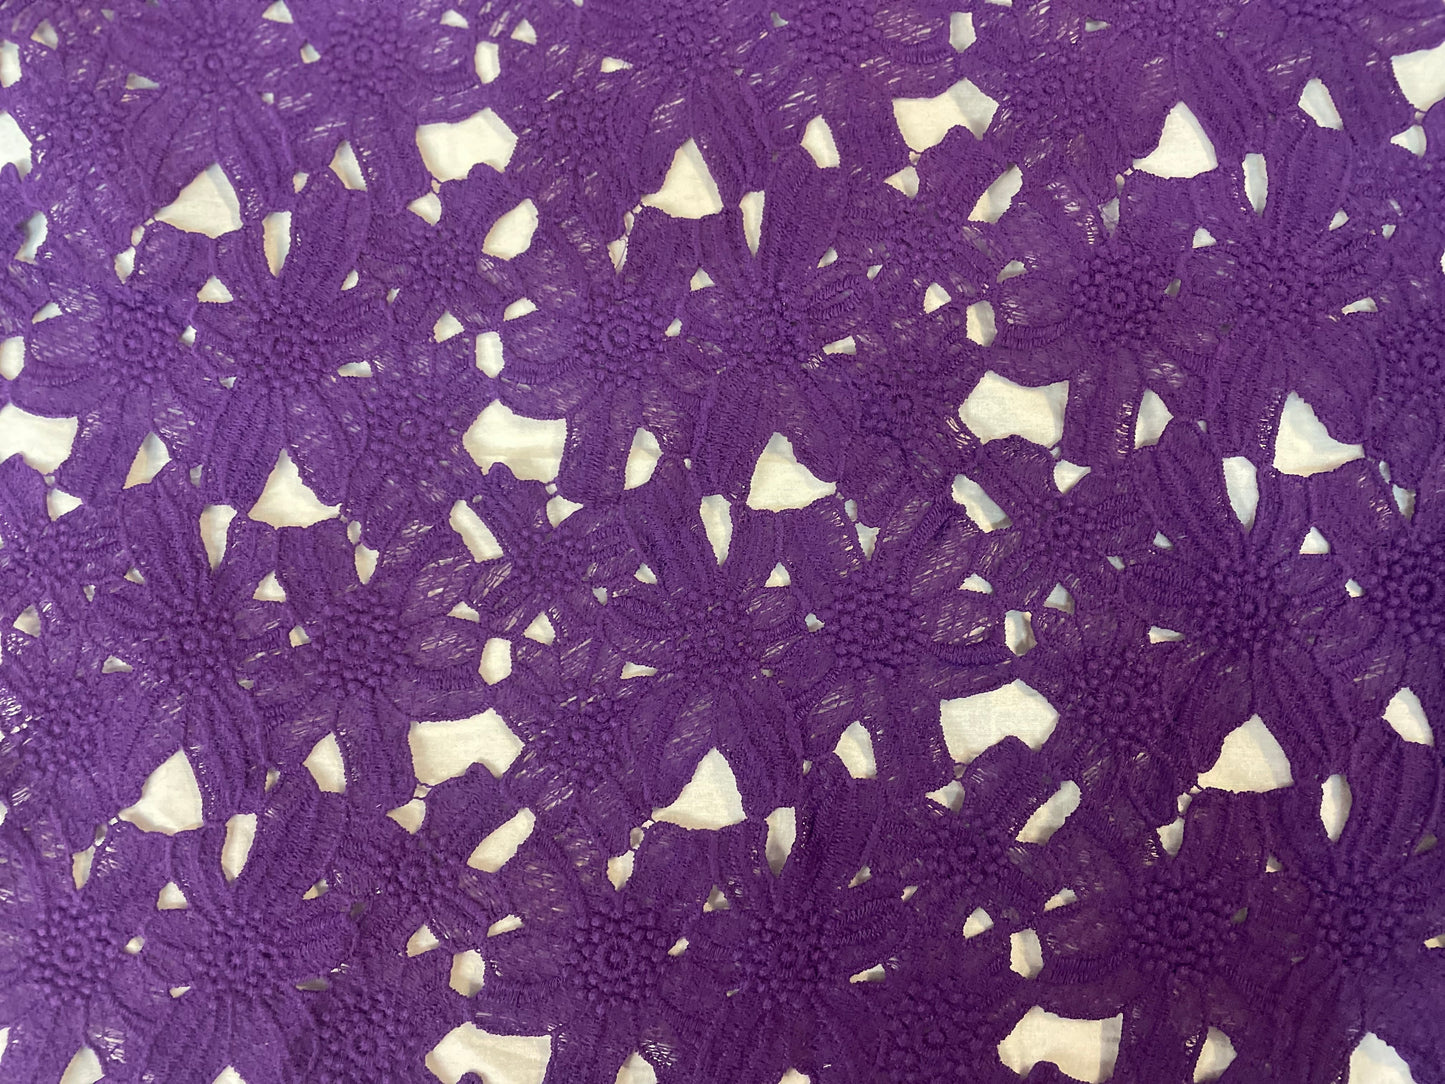 Daisy Floral Cotton Lace - Aubergine Purple